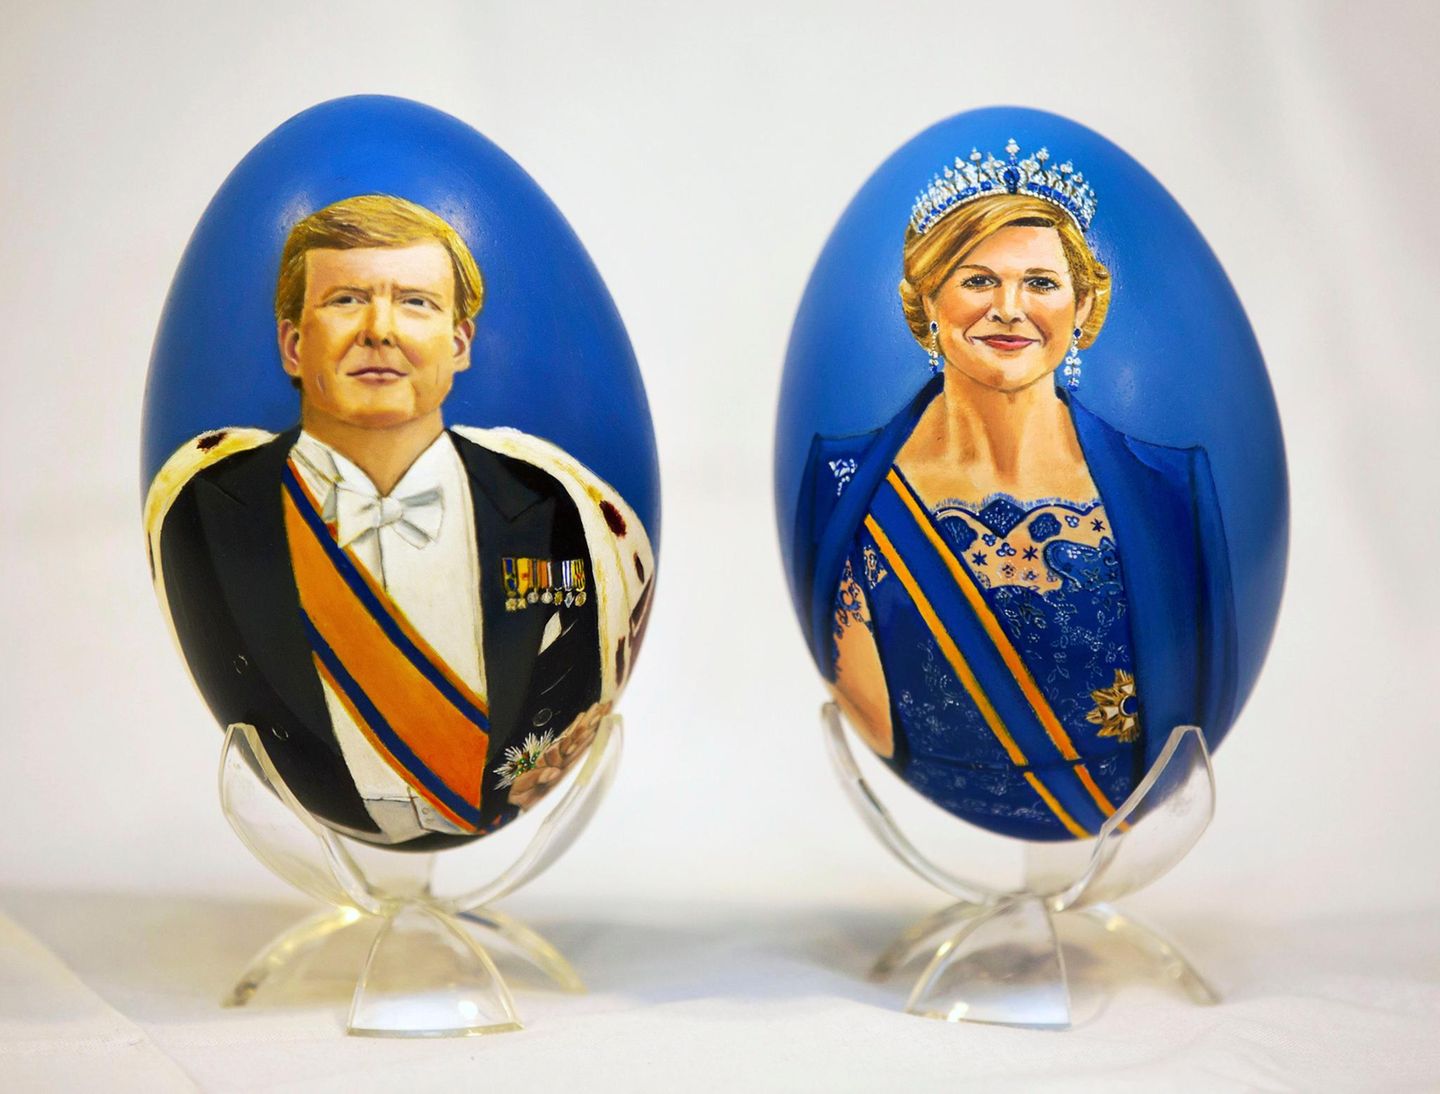 König Willem-Alexander und Königin Máxima mal anders: Das holländische Königspaar ziert handbemalte Frühstückseier.